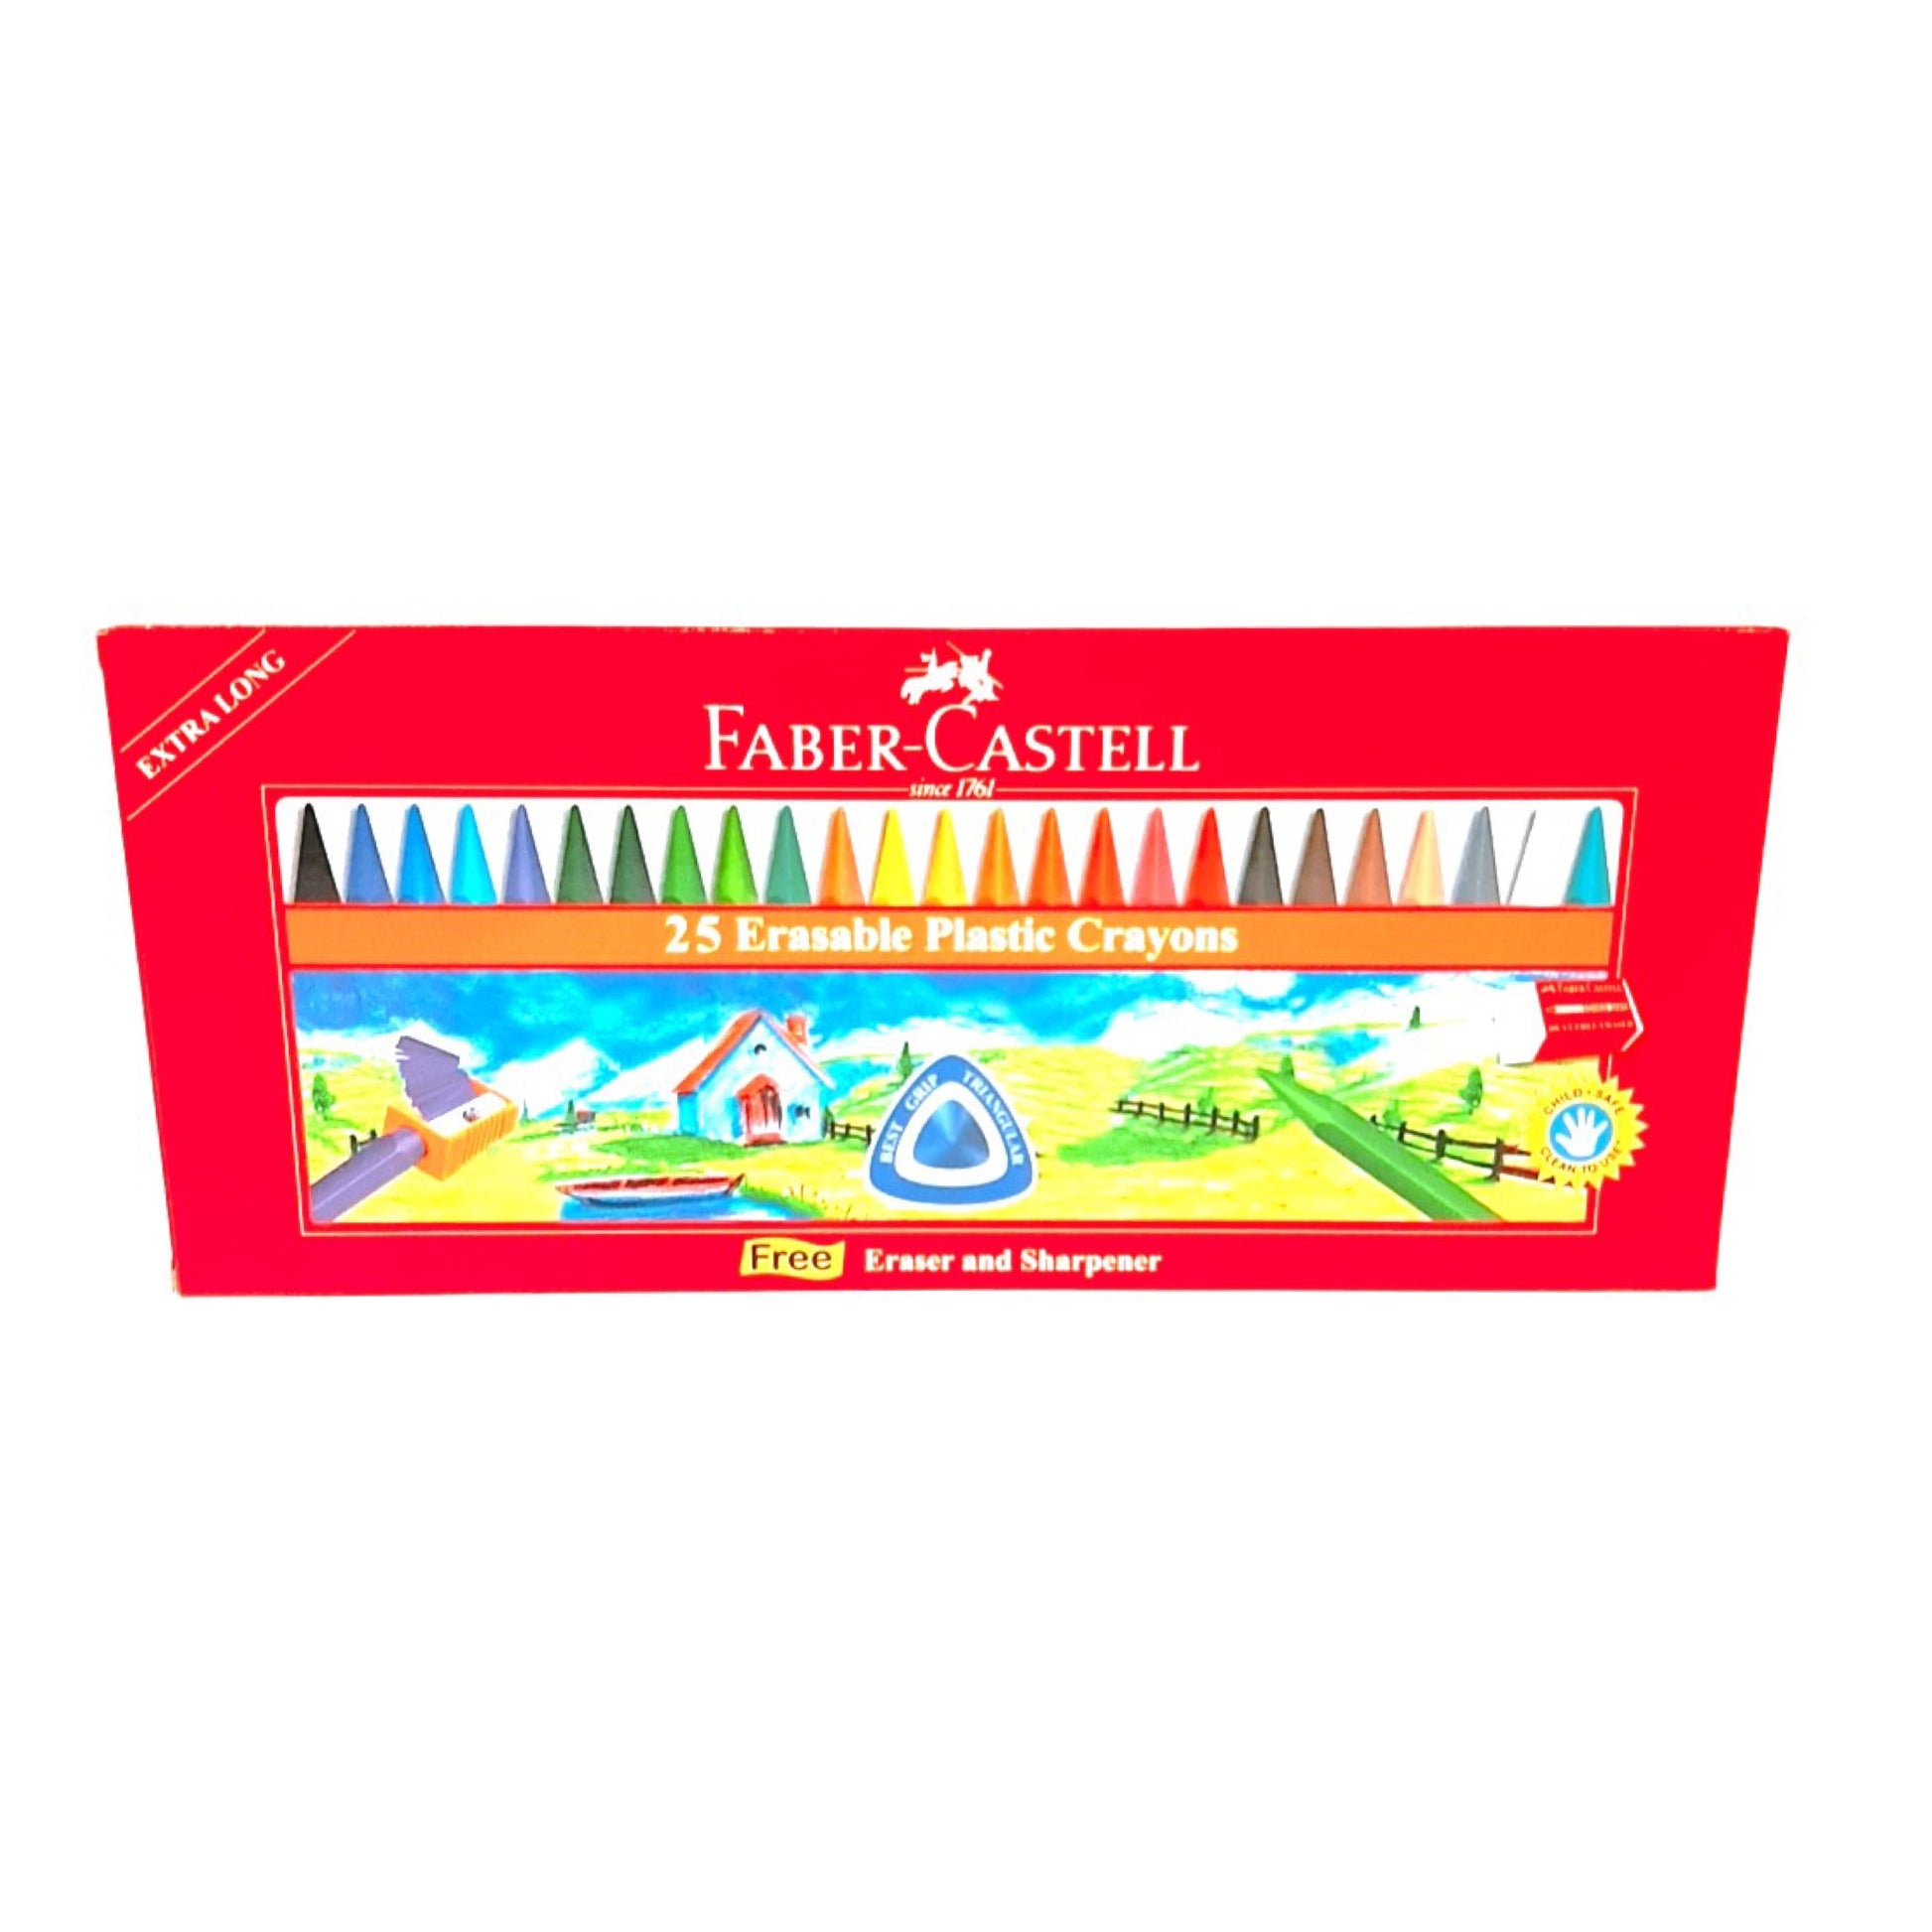 Faber Castell24 Long Crayons || الوان فيبر كاستل شمعيه 25 لون